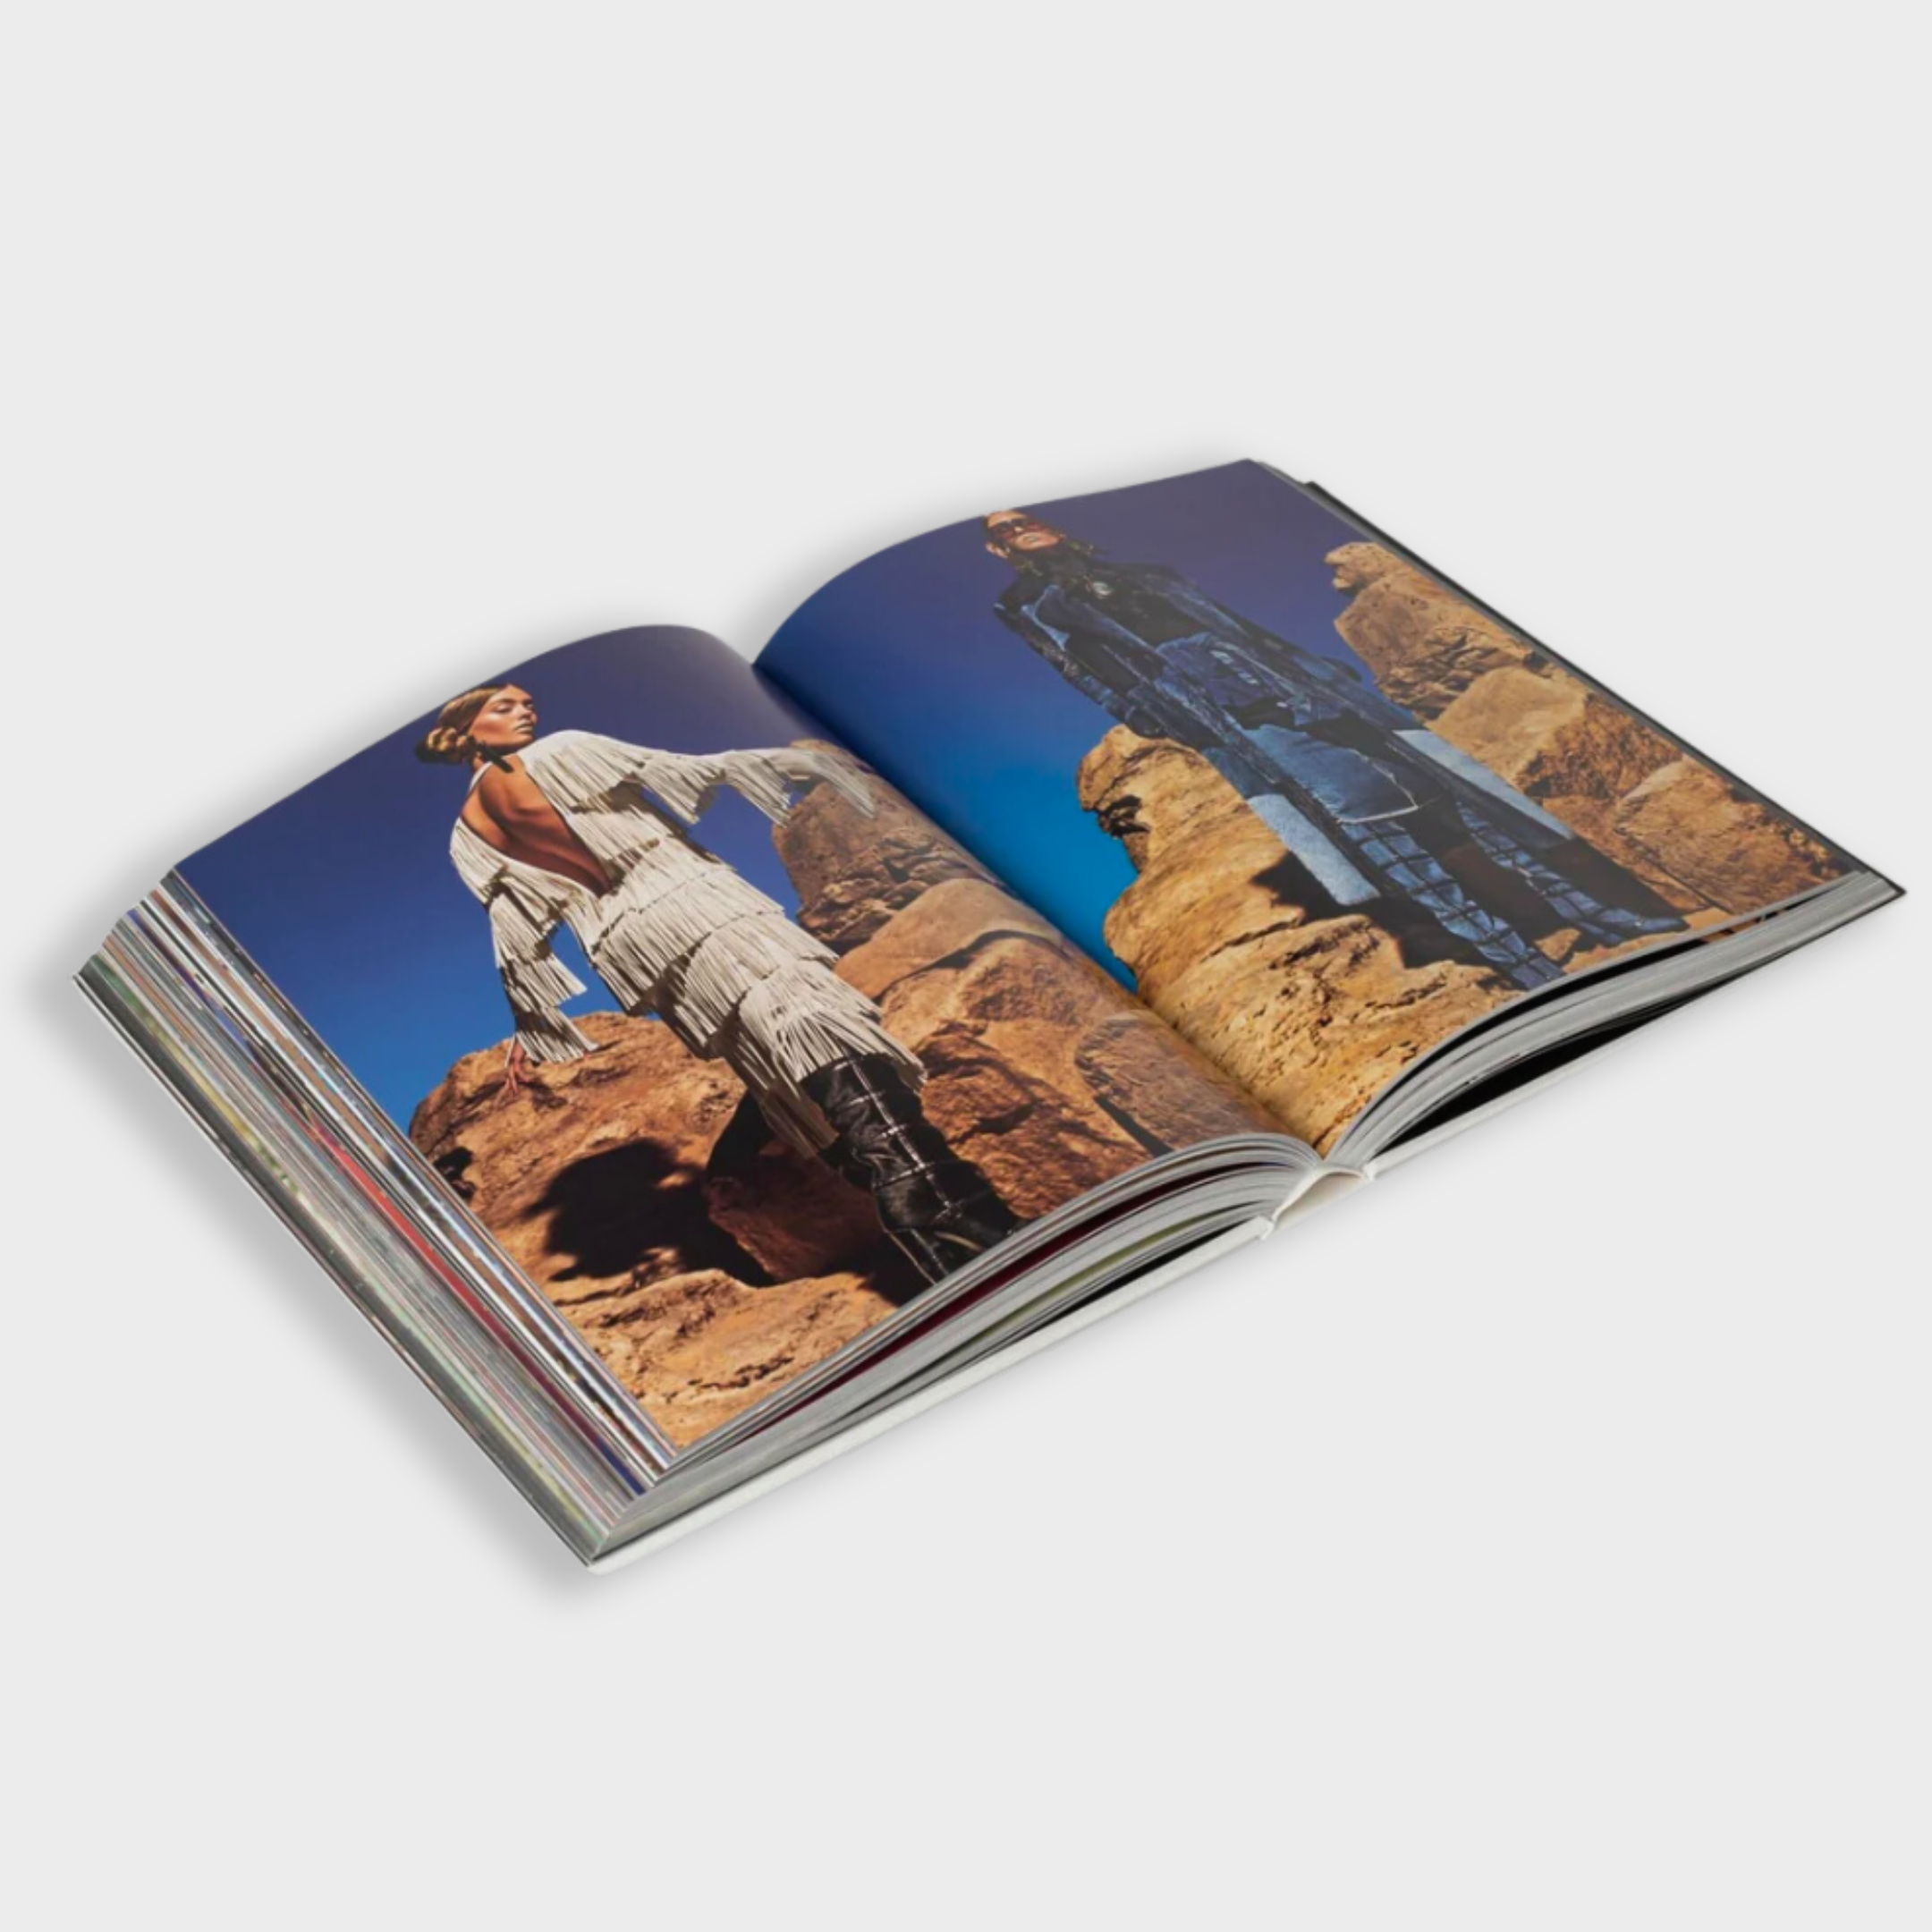 Artbook - Sách Tiếng Anh - TomFord 002